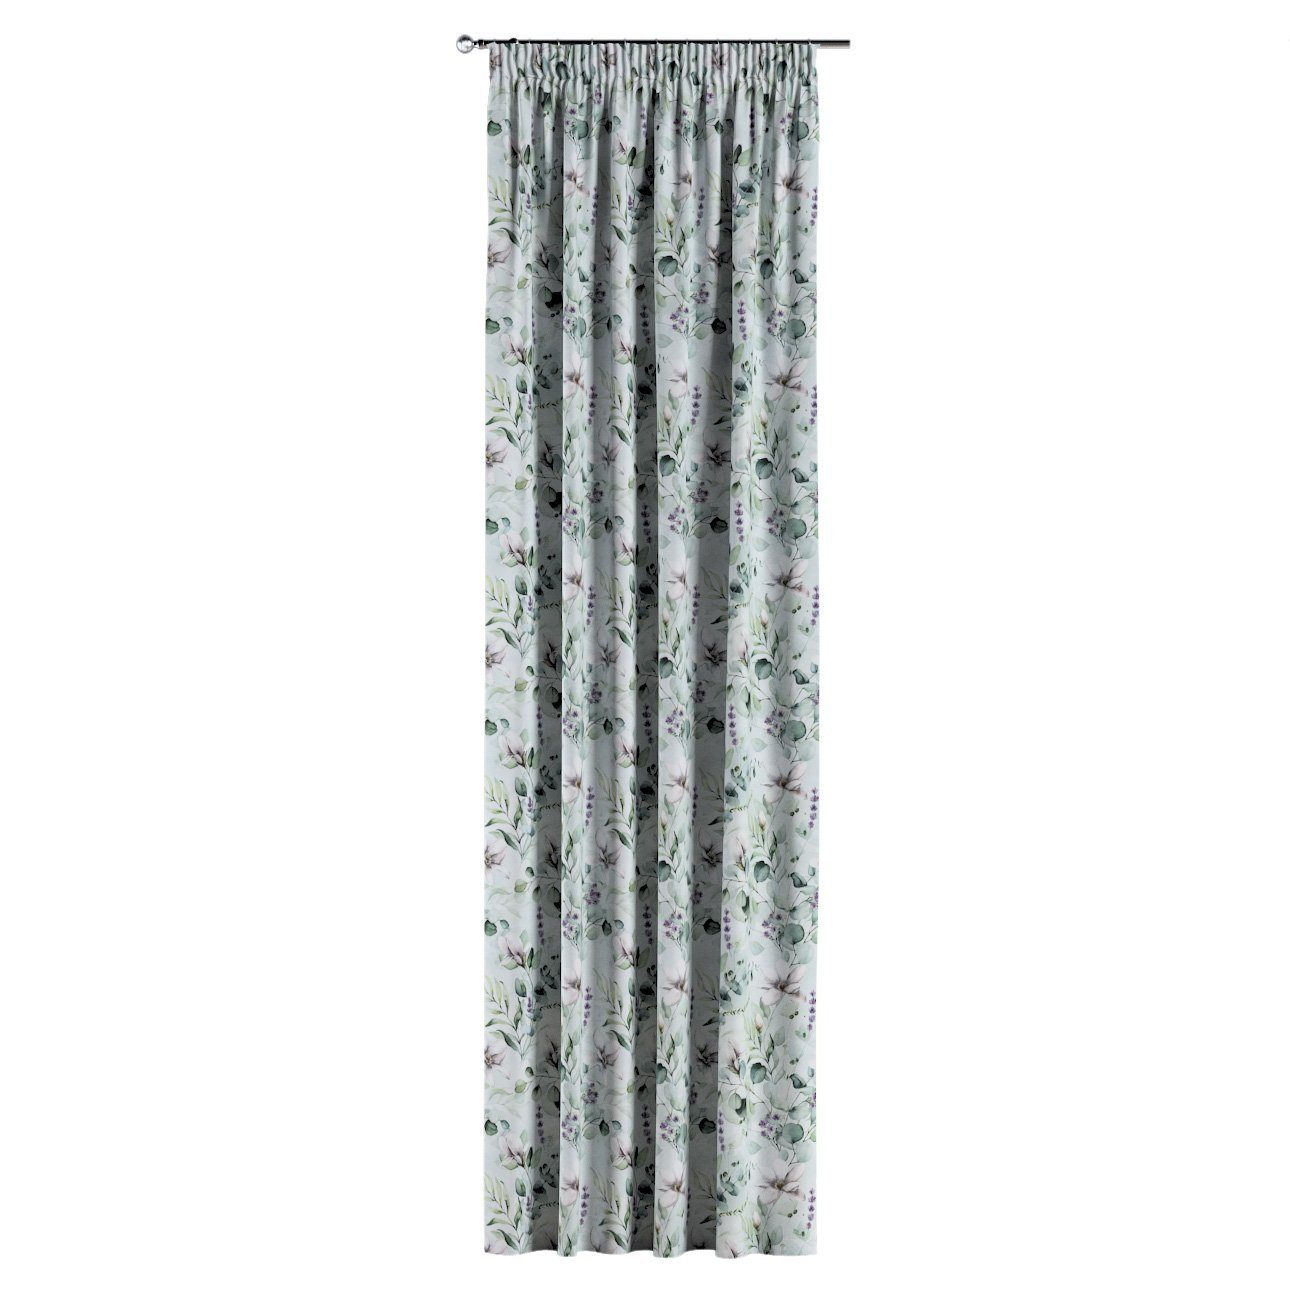 Vorhang Vorhang mit Flowers, cm, 130x100 Dekoria Kräuselband mintgrün-weiß